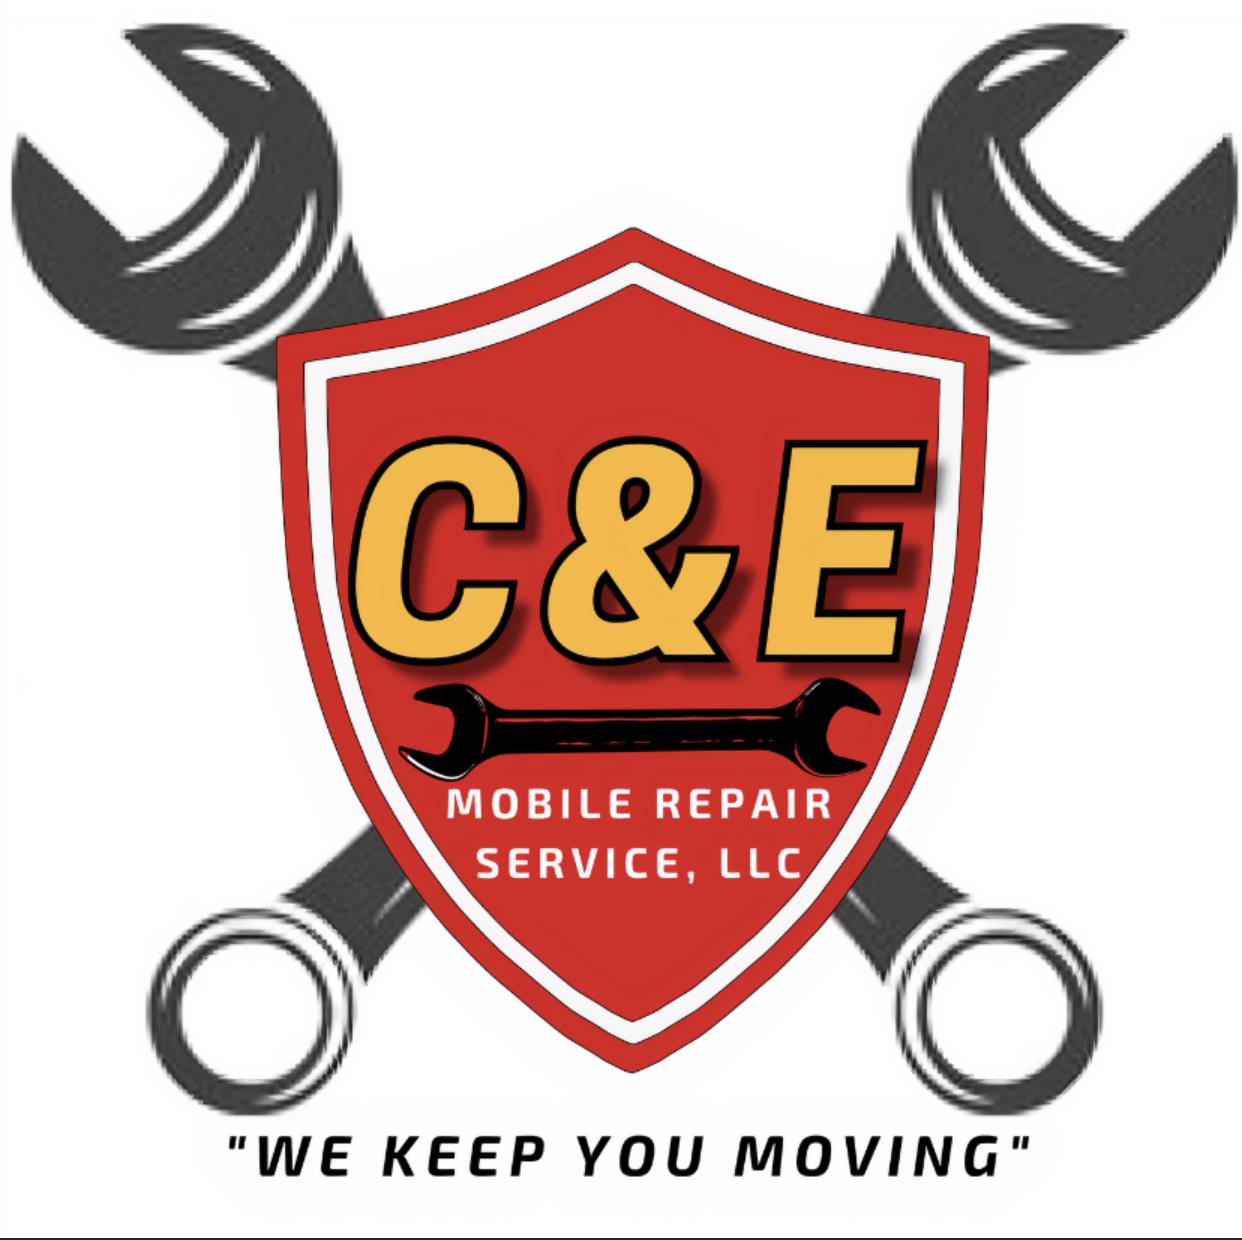 C & E Mobile Repair Service, LLC | 277 Shell Rd, Penns Grove, NJ 08069 | Phone: (856) 500-1242